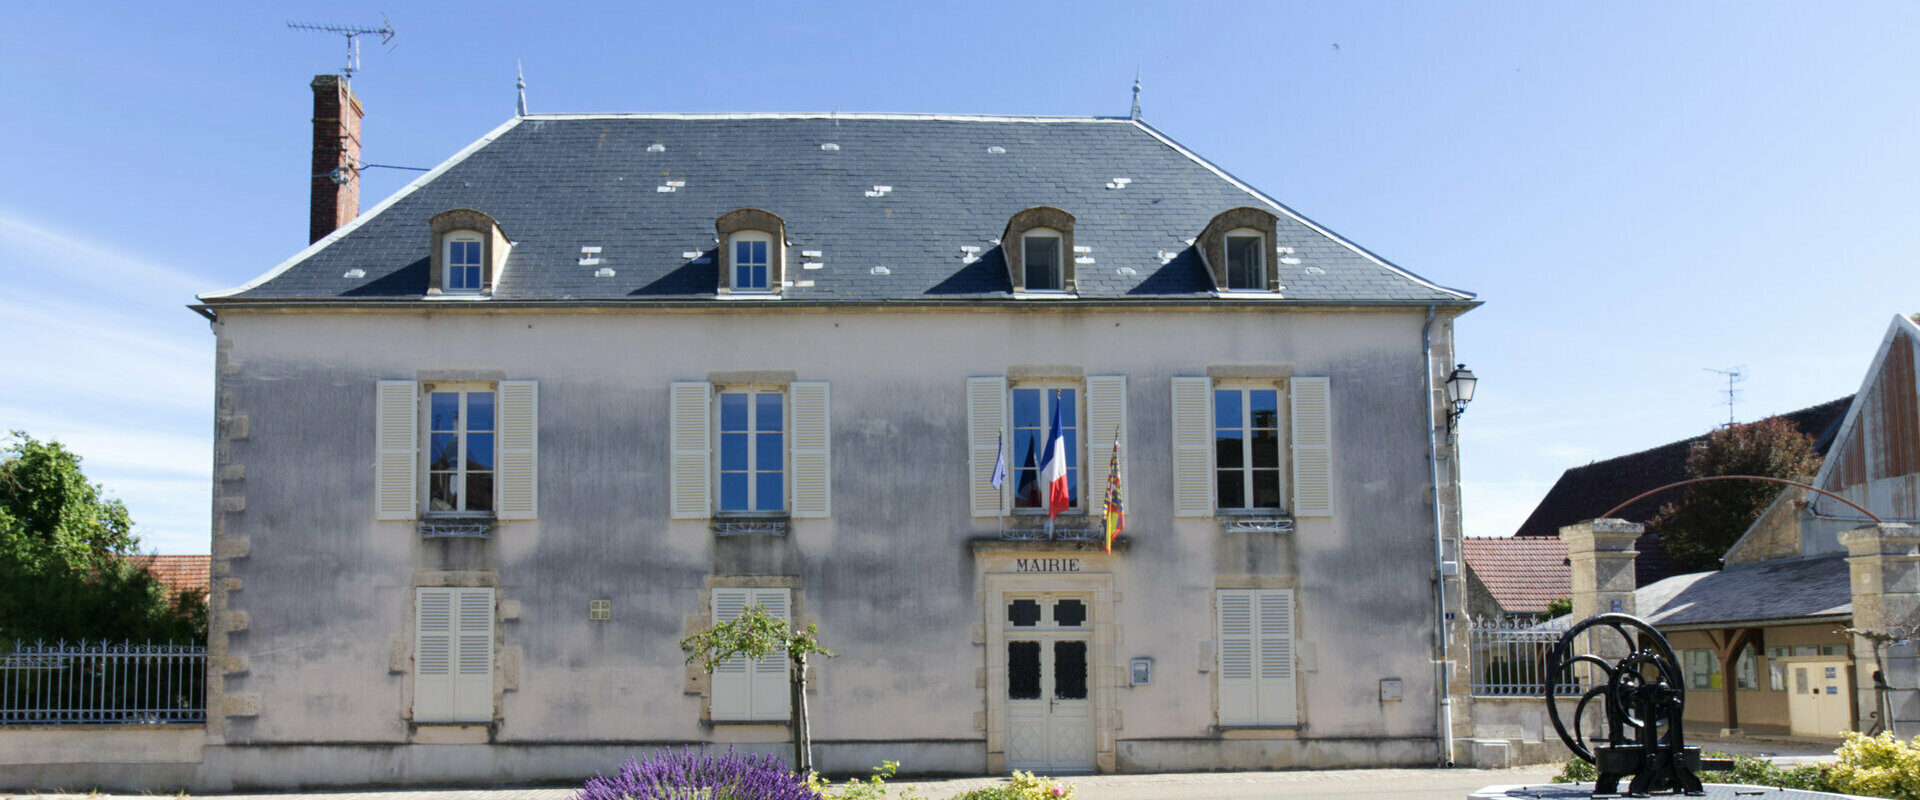 Site officiel de la commune de Joux-la-Ville dans l'Yonne